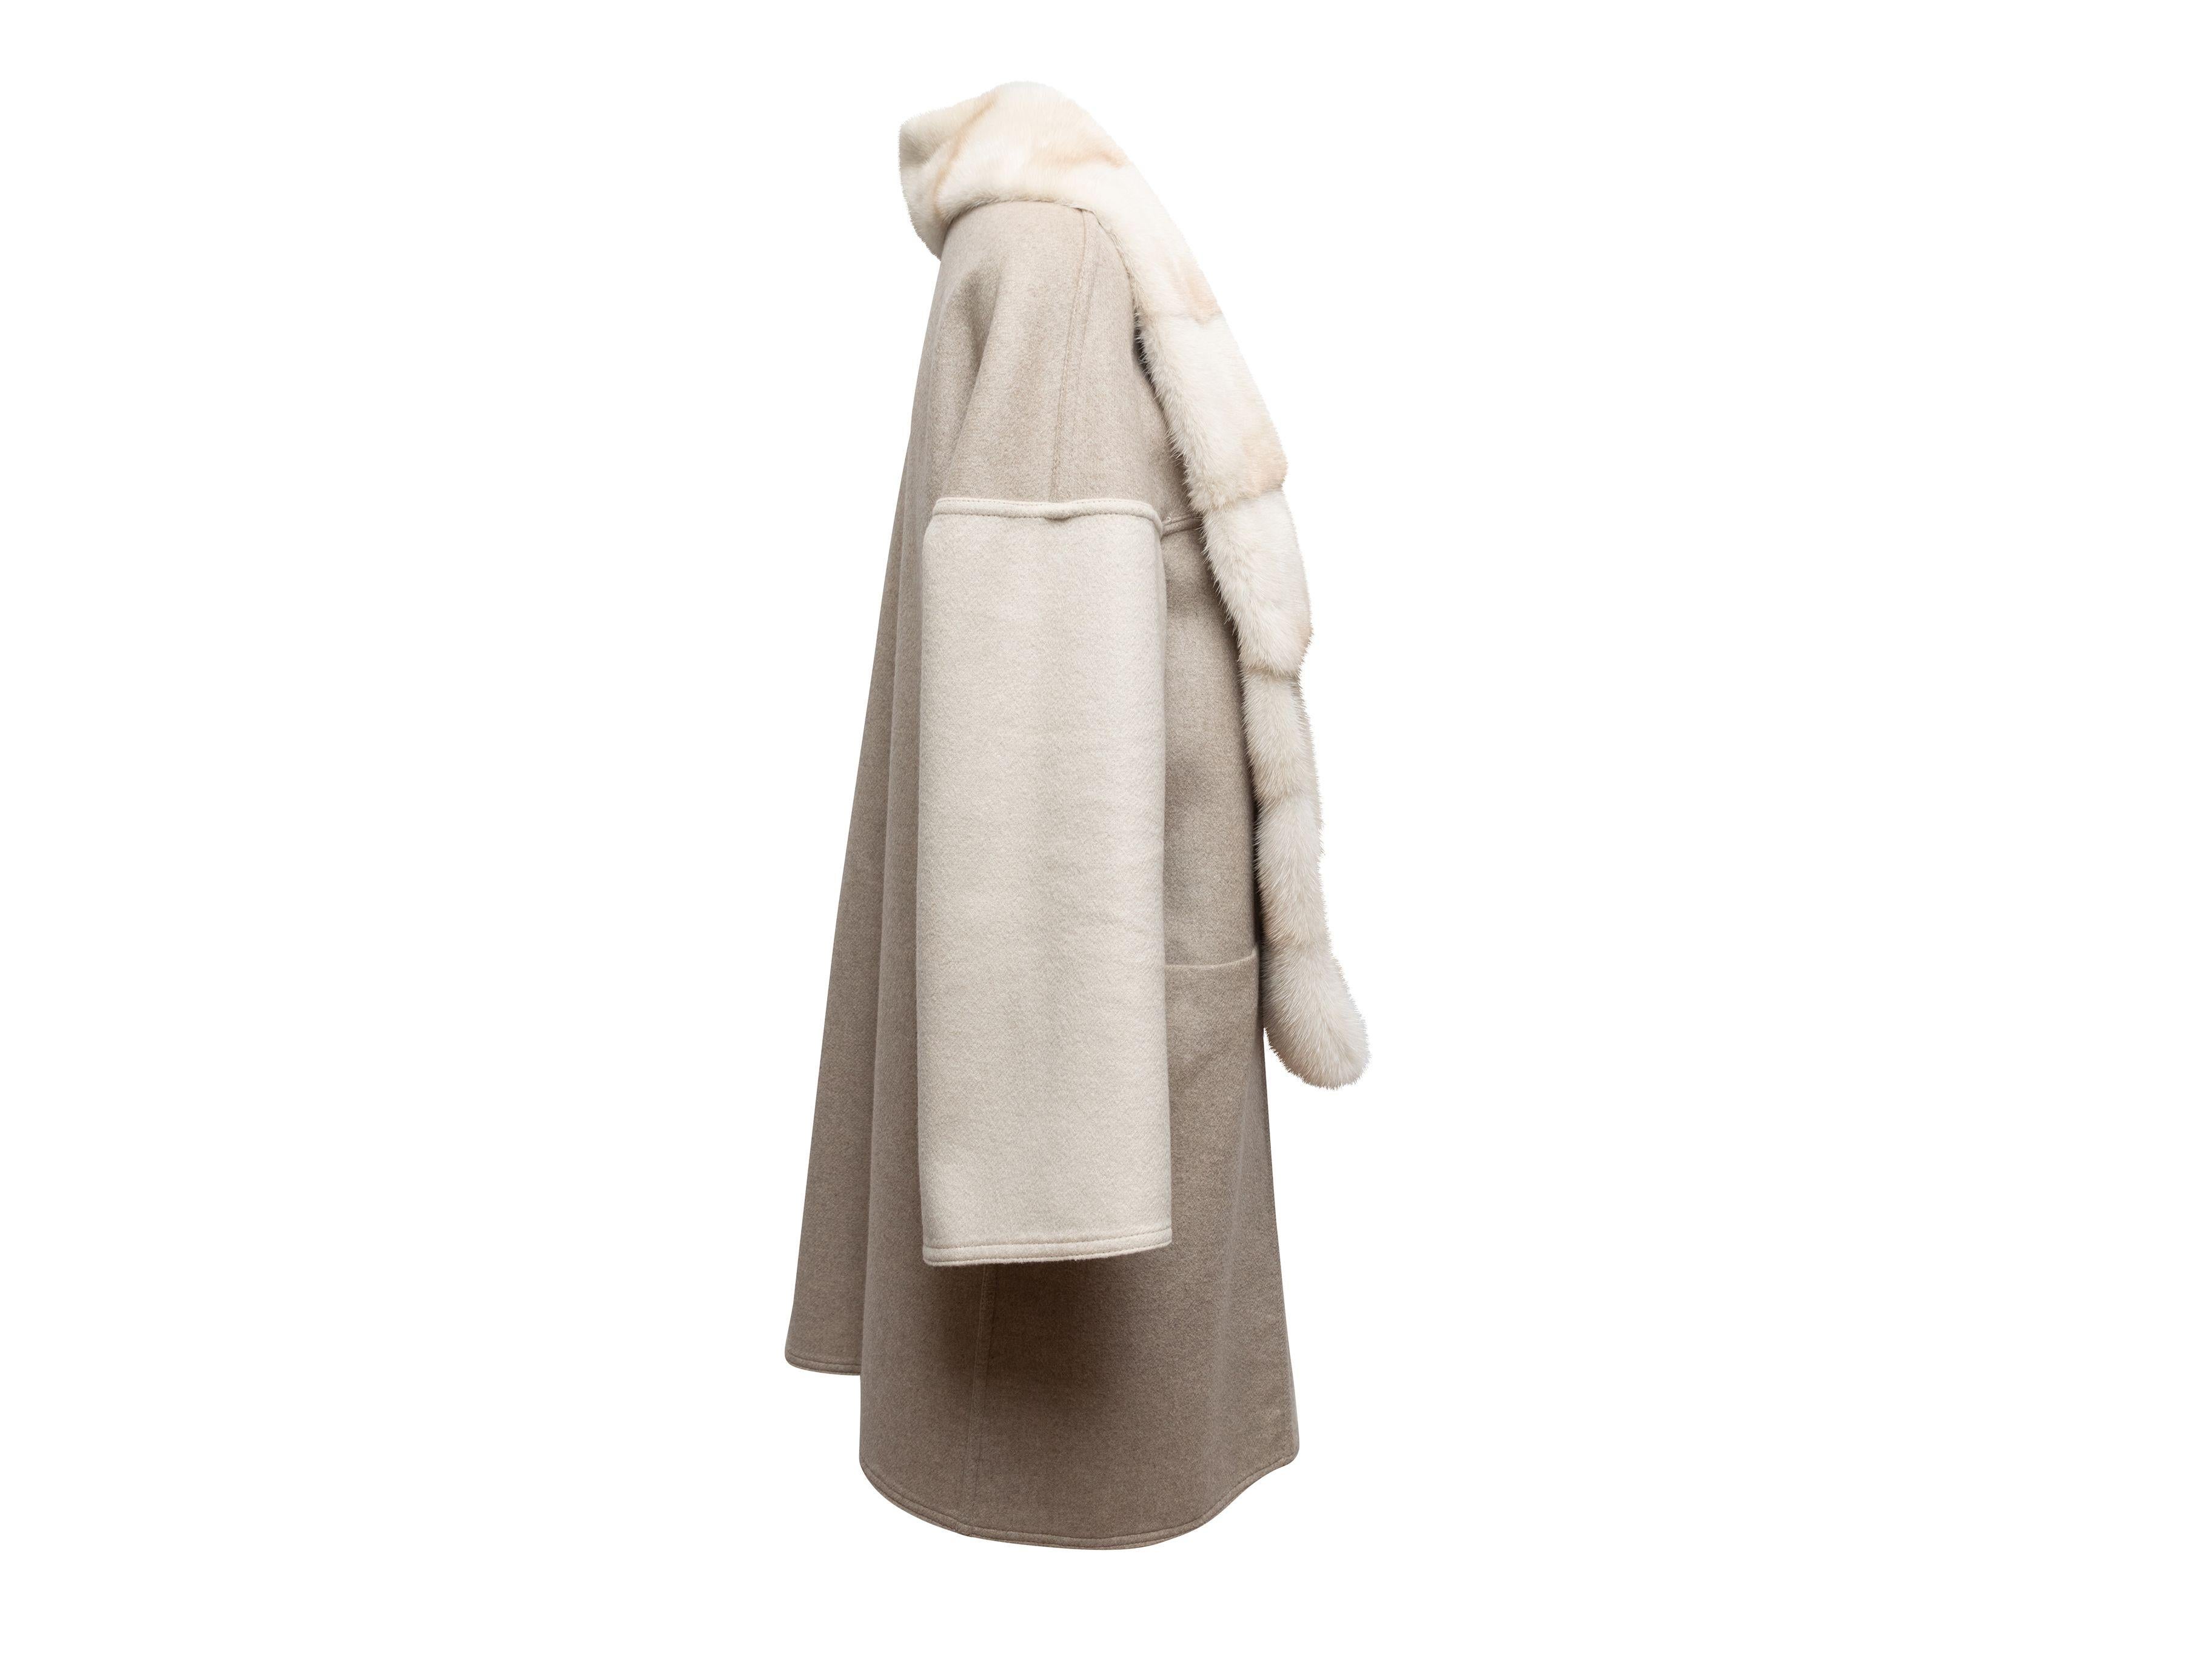 Meerstein Grey & Cream Reversible Cashmere & Sable Fur Coat 4